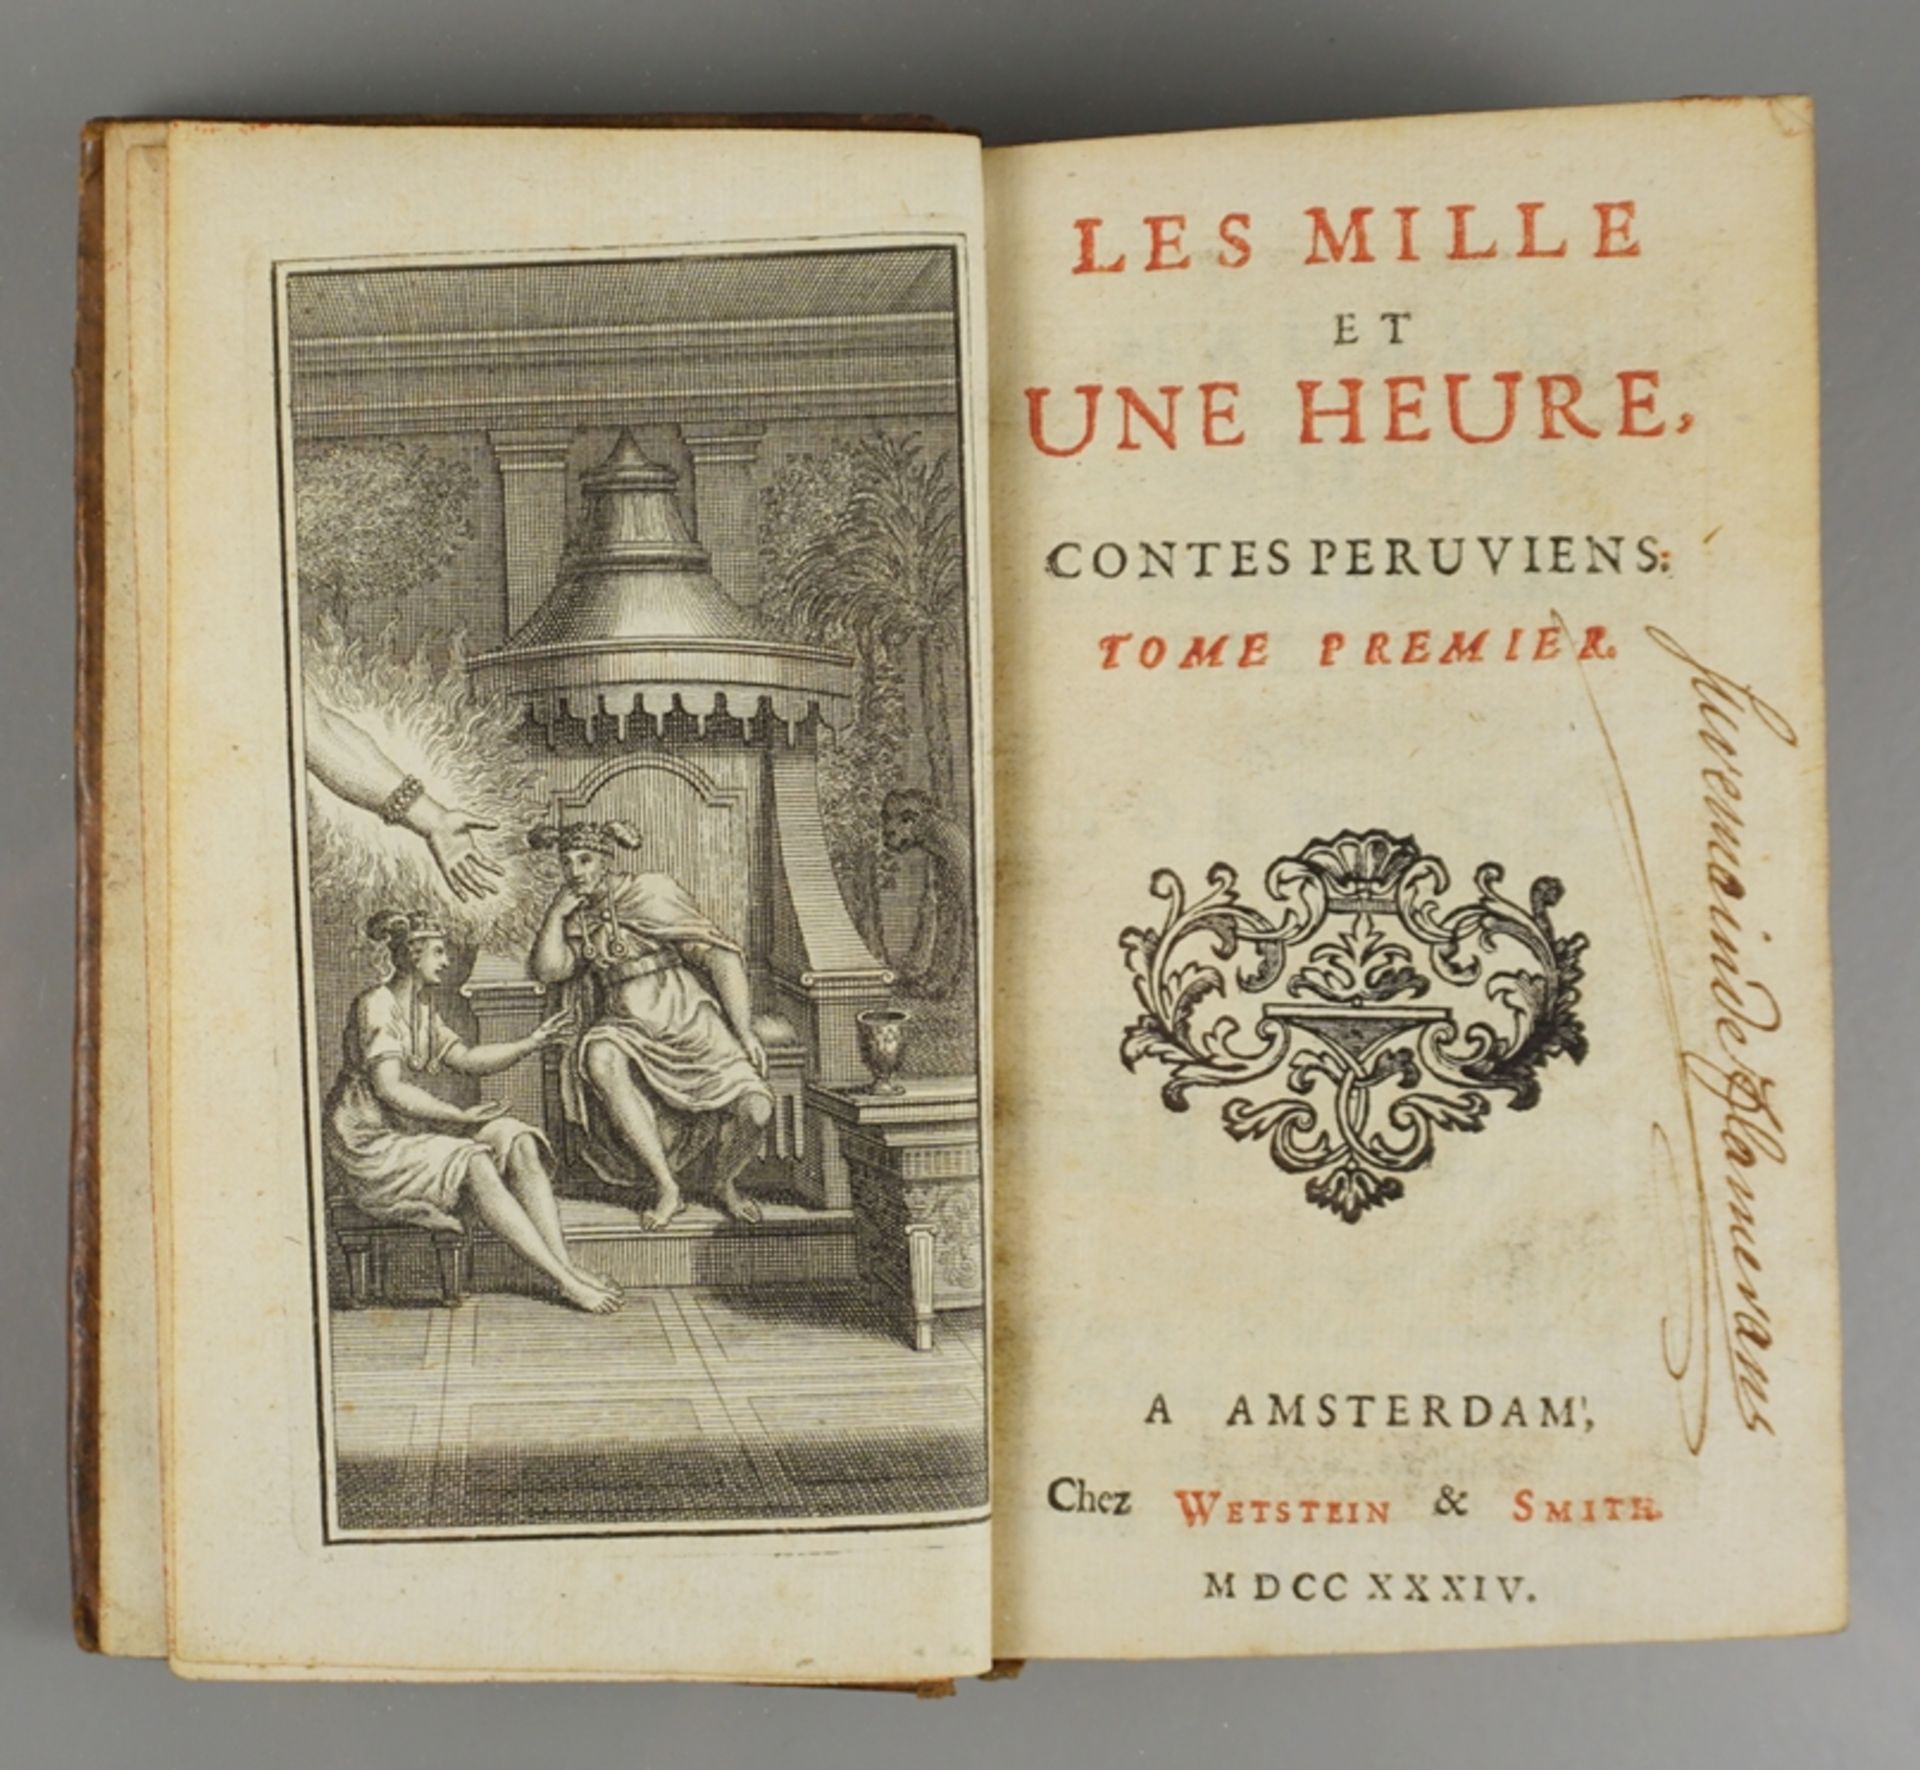 Thomas-Simin Gueulette, "Les Mille Et Une Heure: Contes Peruviens", 1737, 2 Bde.